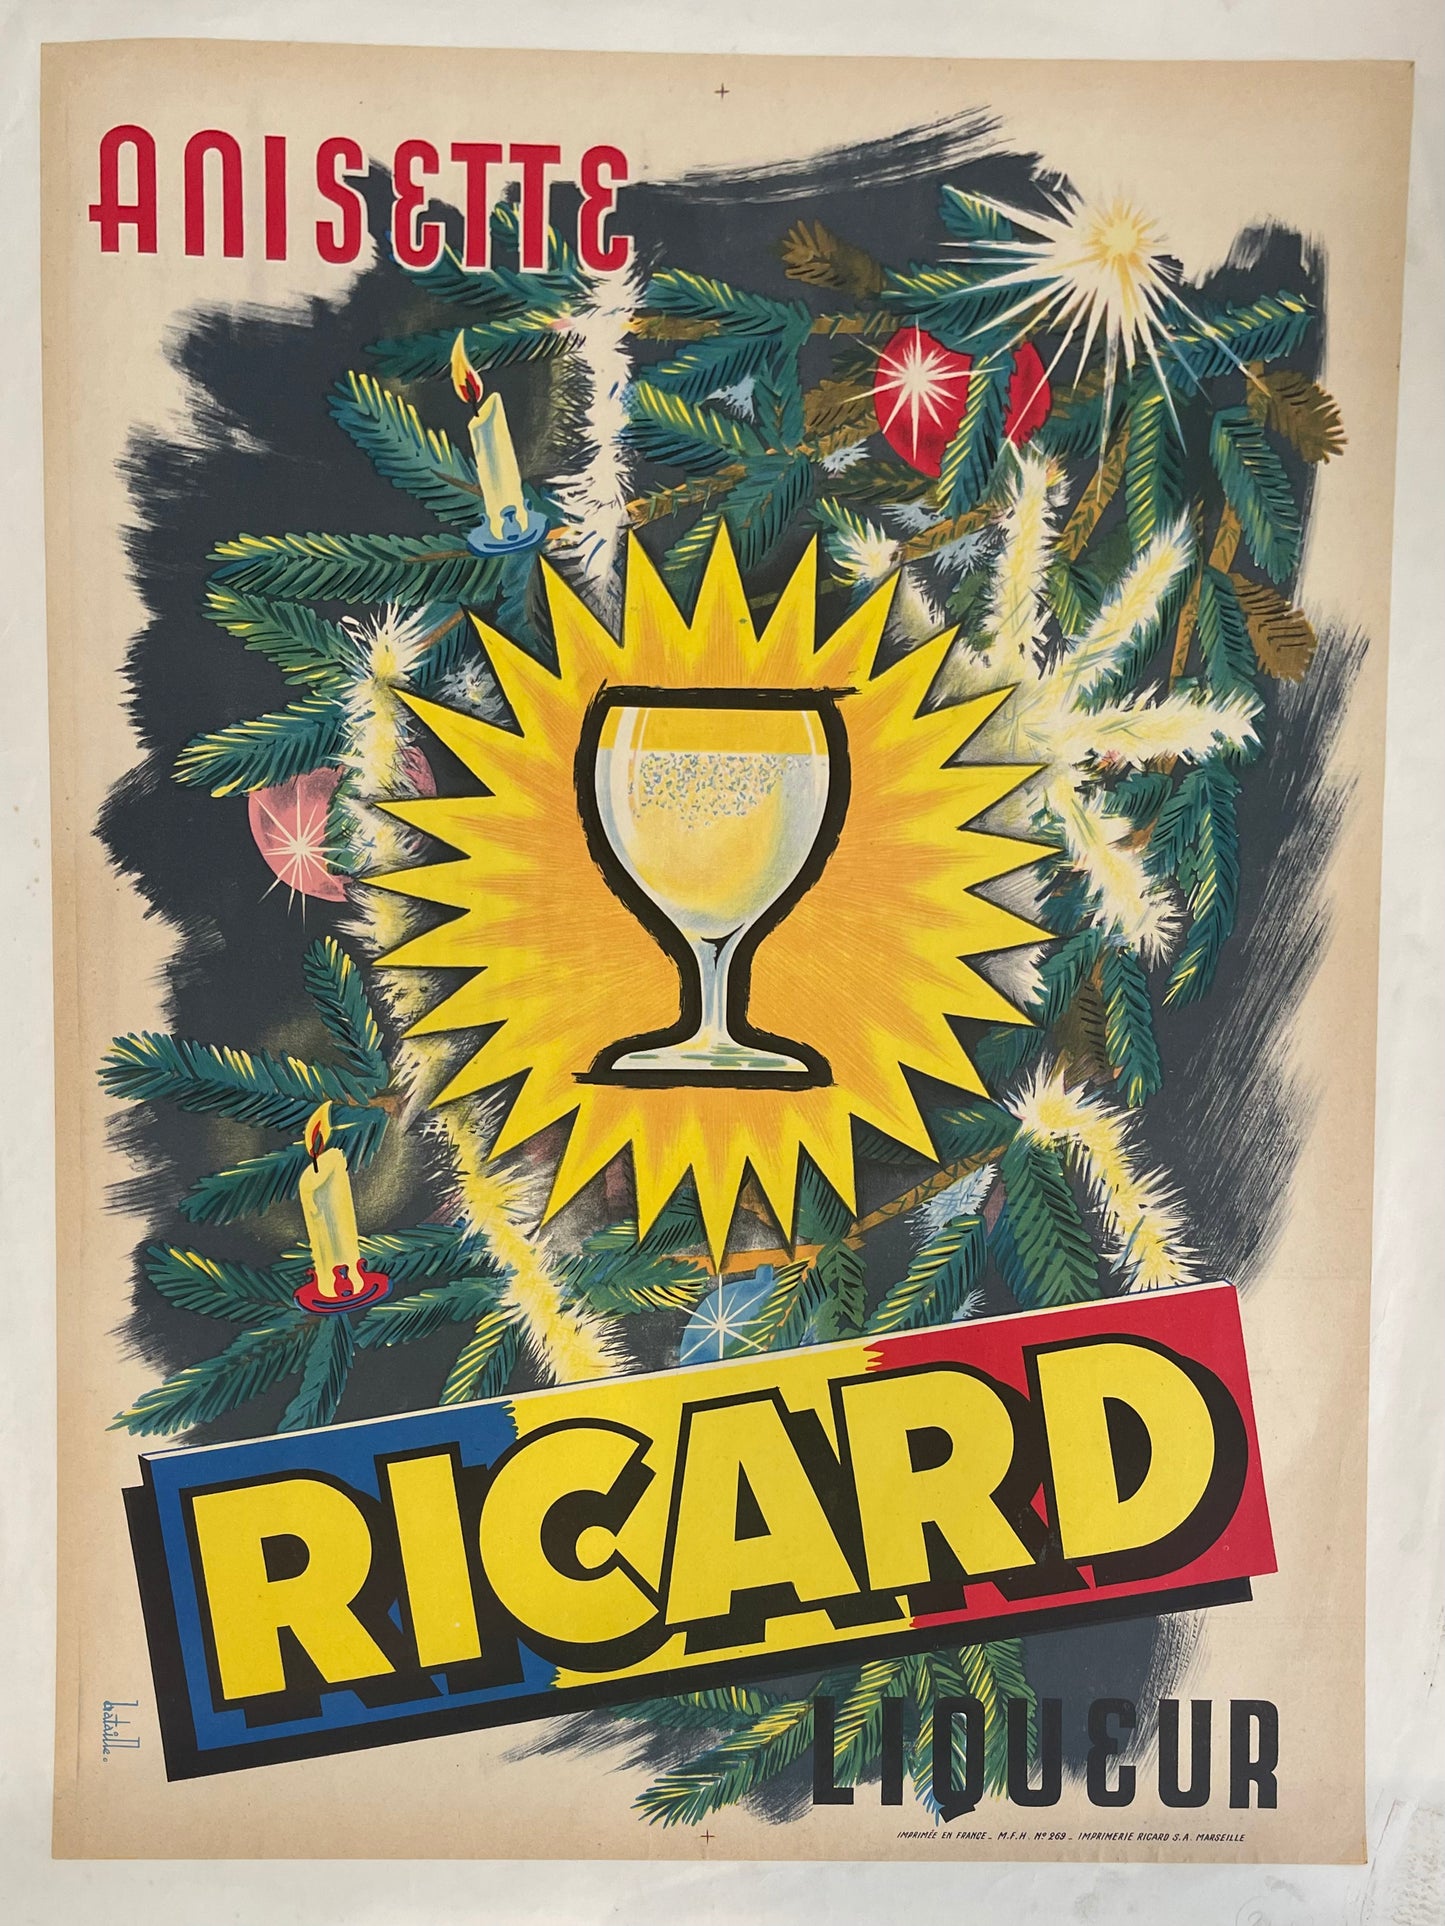 Ricard Liqueur